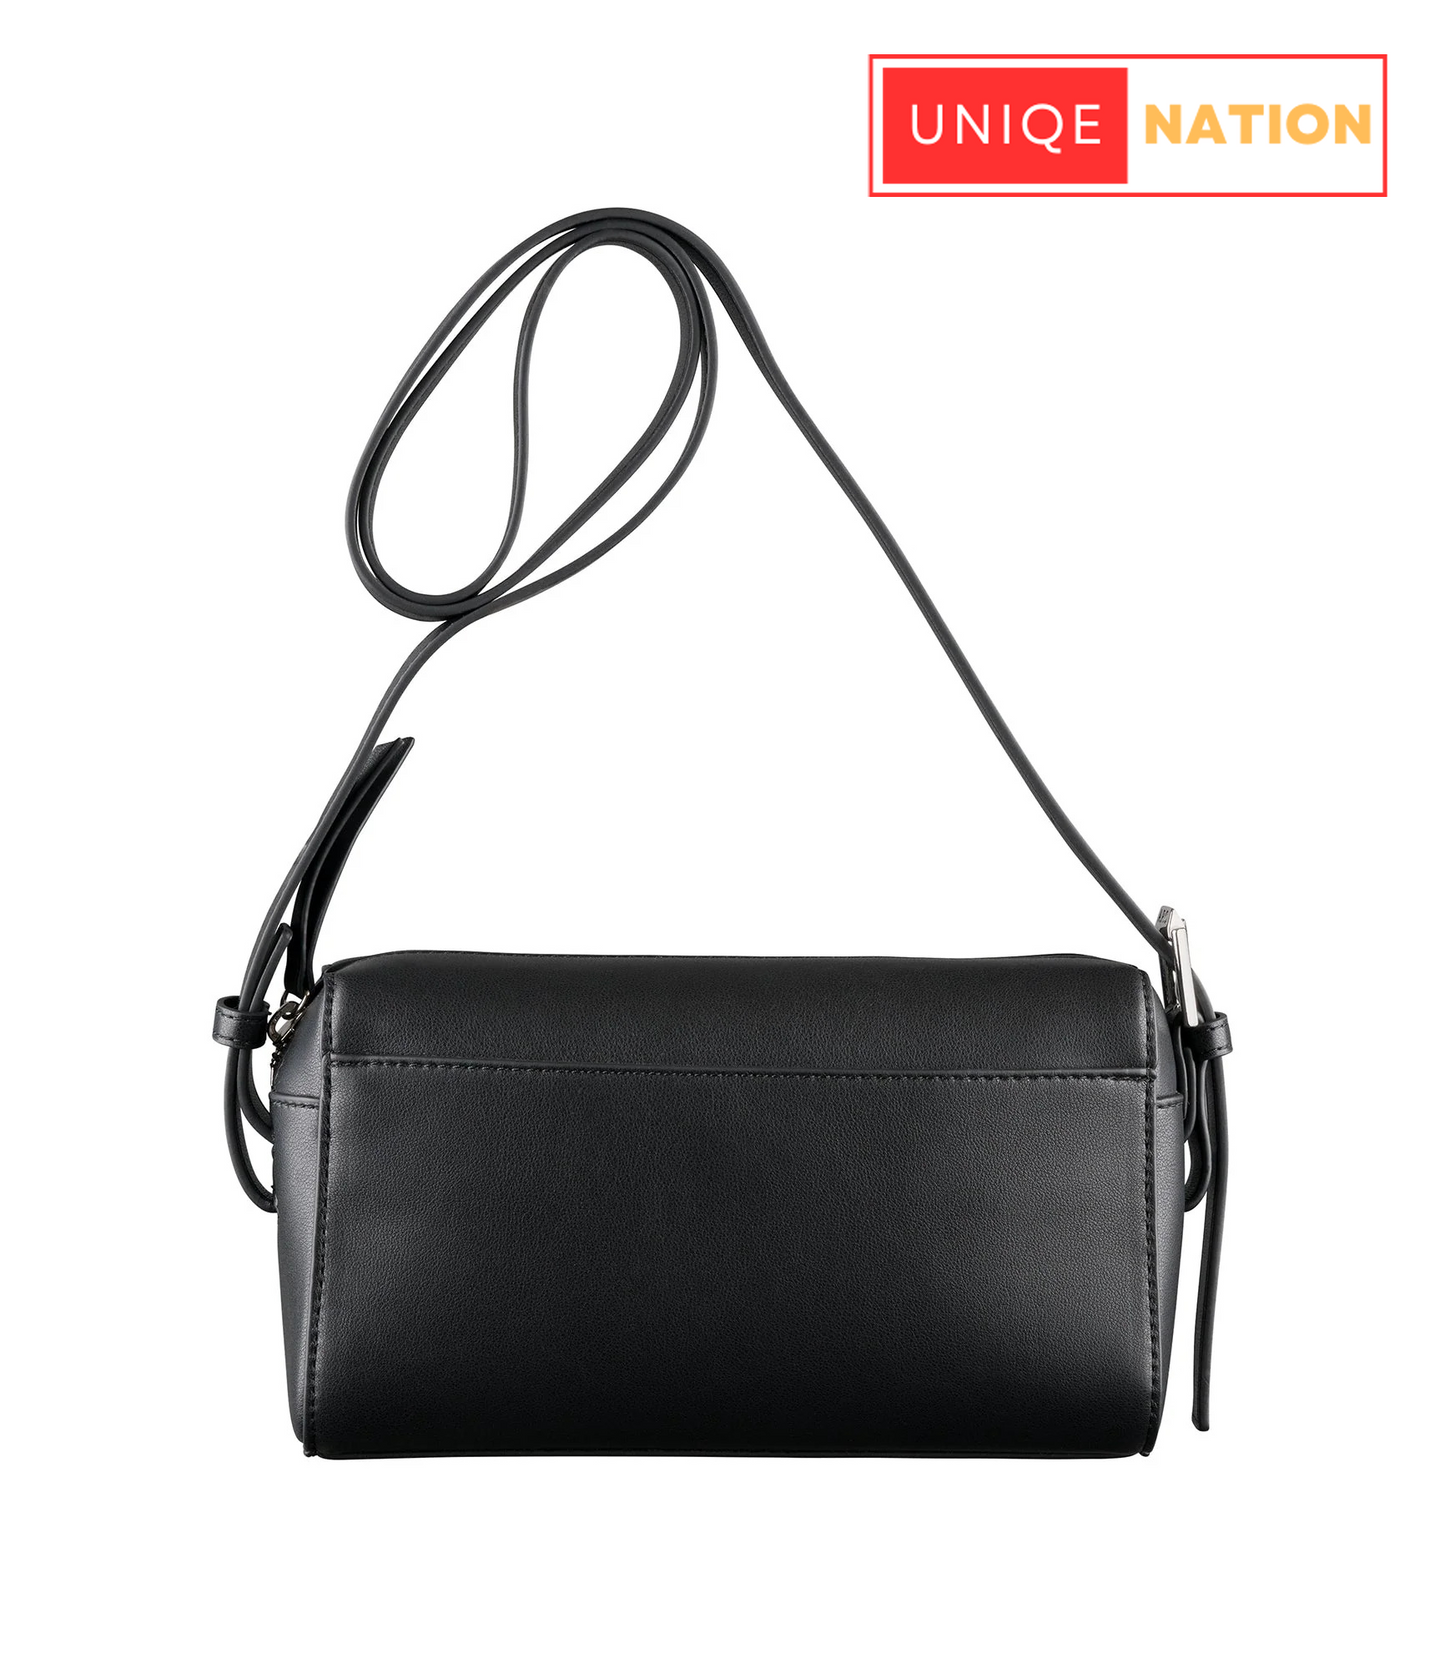 UNIQUE NATION™- Genuine cowhide Black leather Woman's Bags